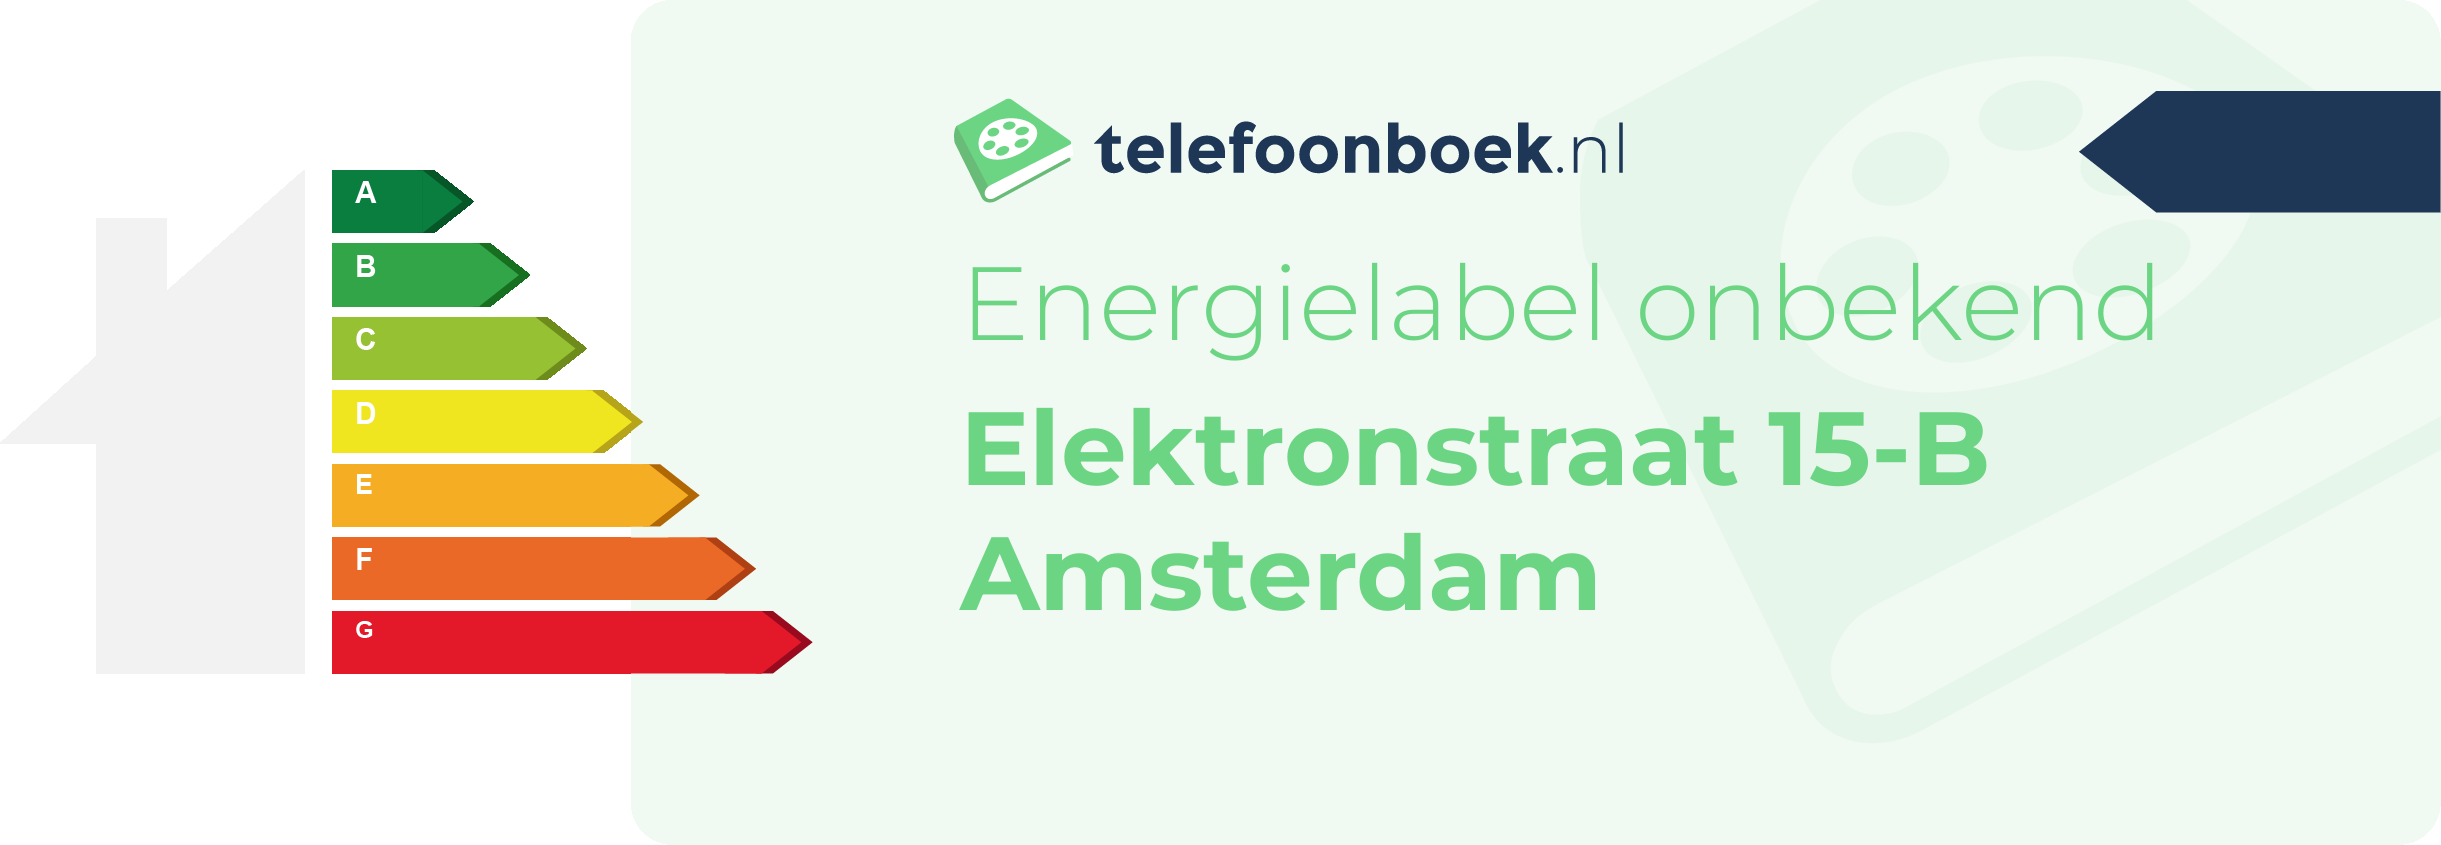 Energielabel Elektronstraat 15-B Amsterdam